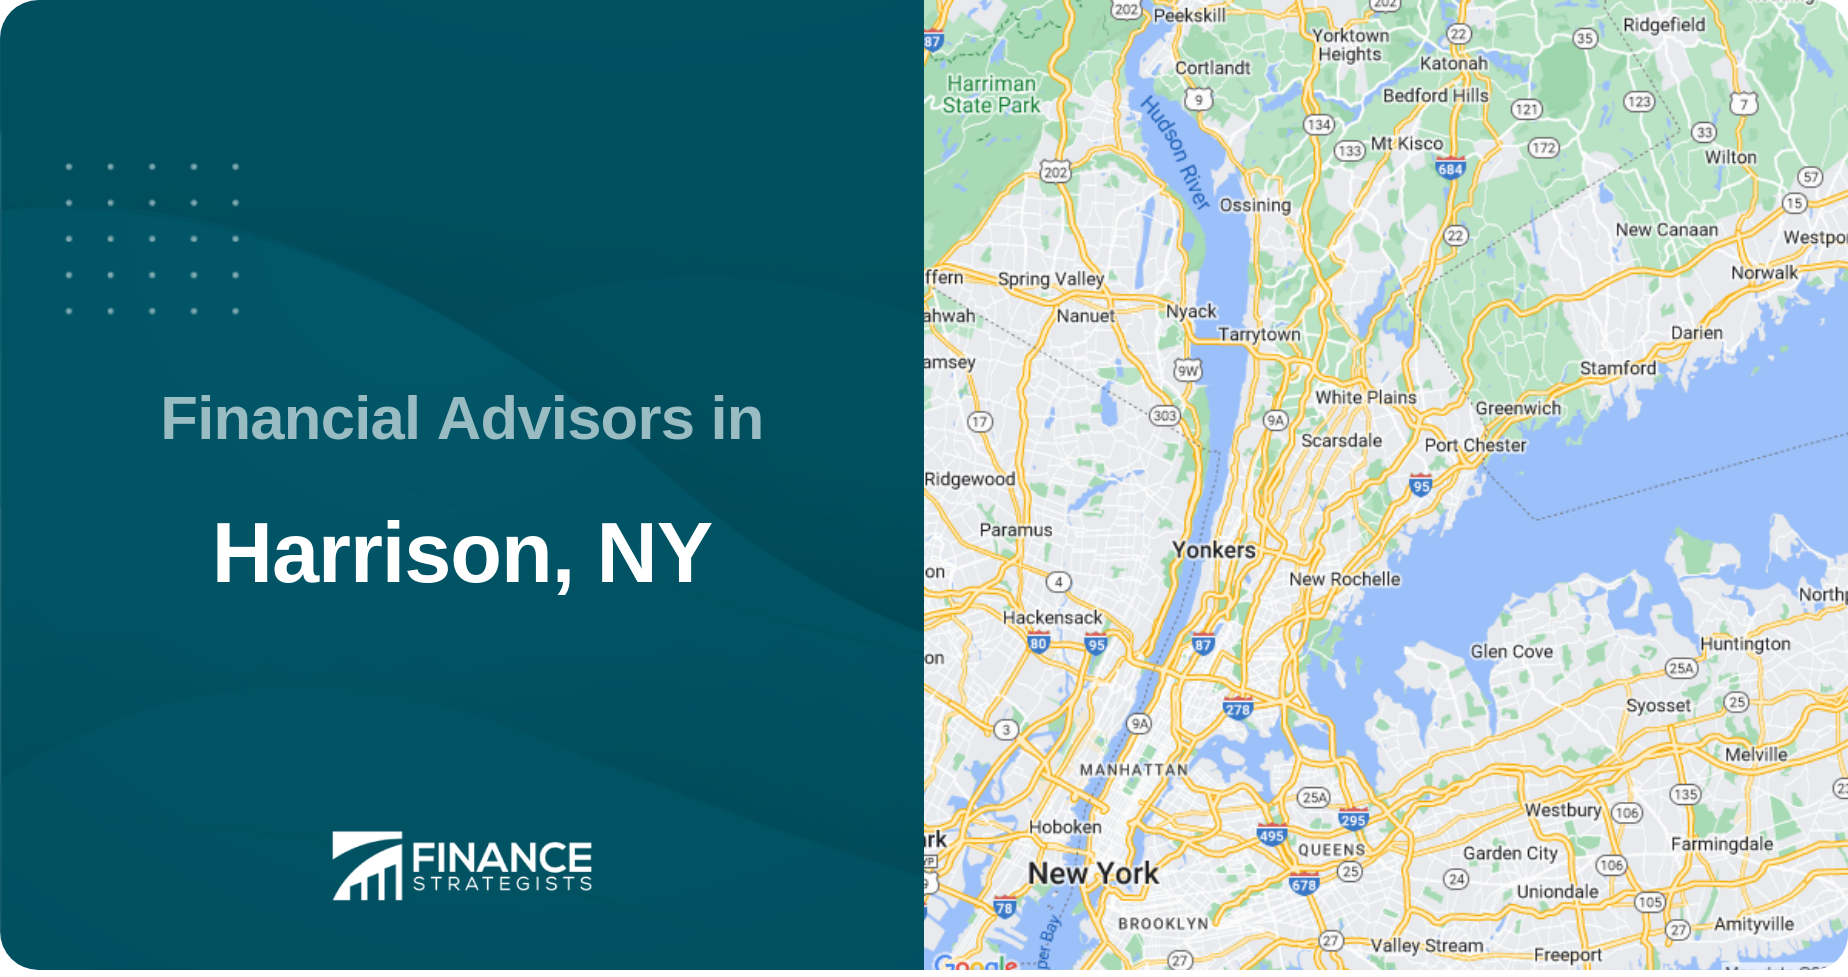 Financial Advisors in Harrison, NY